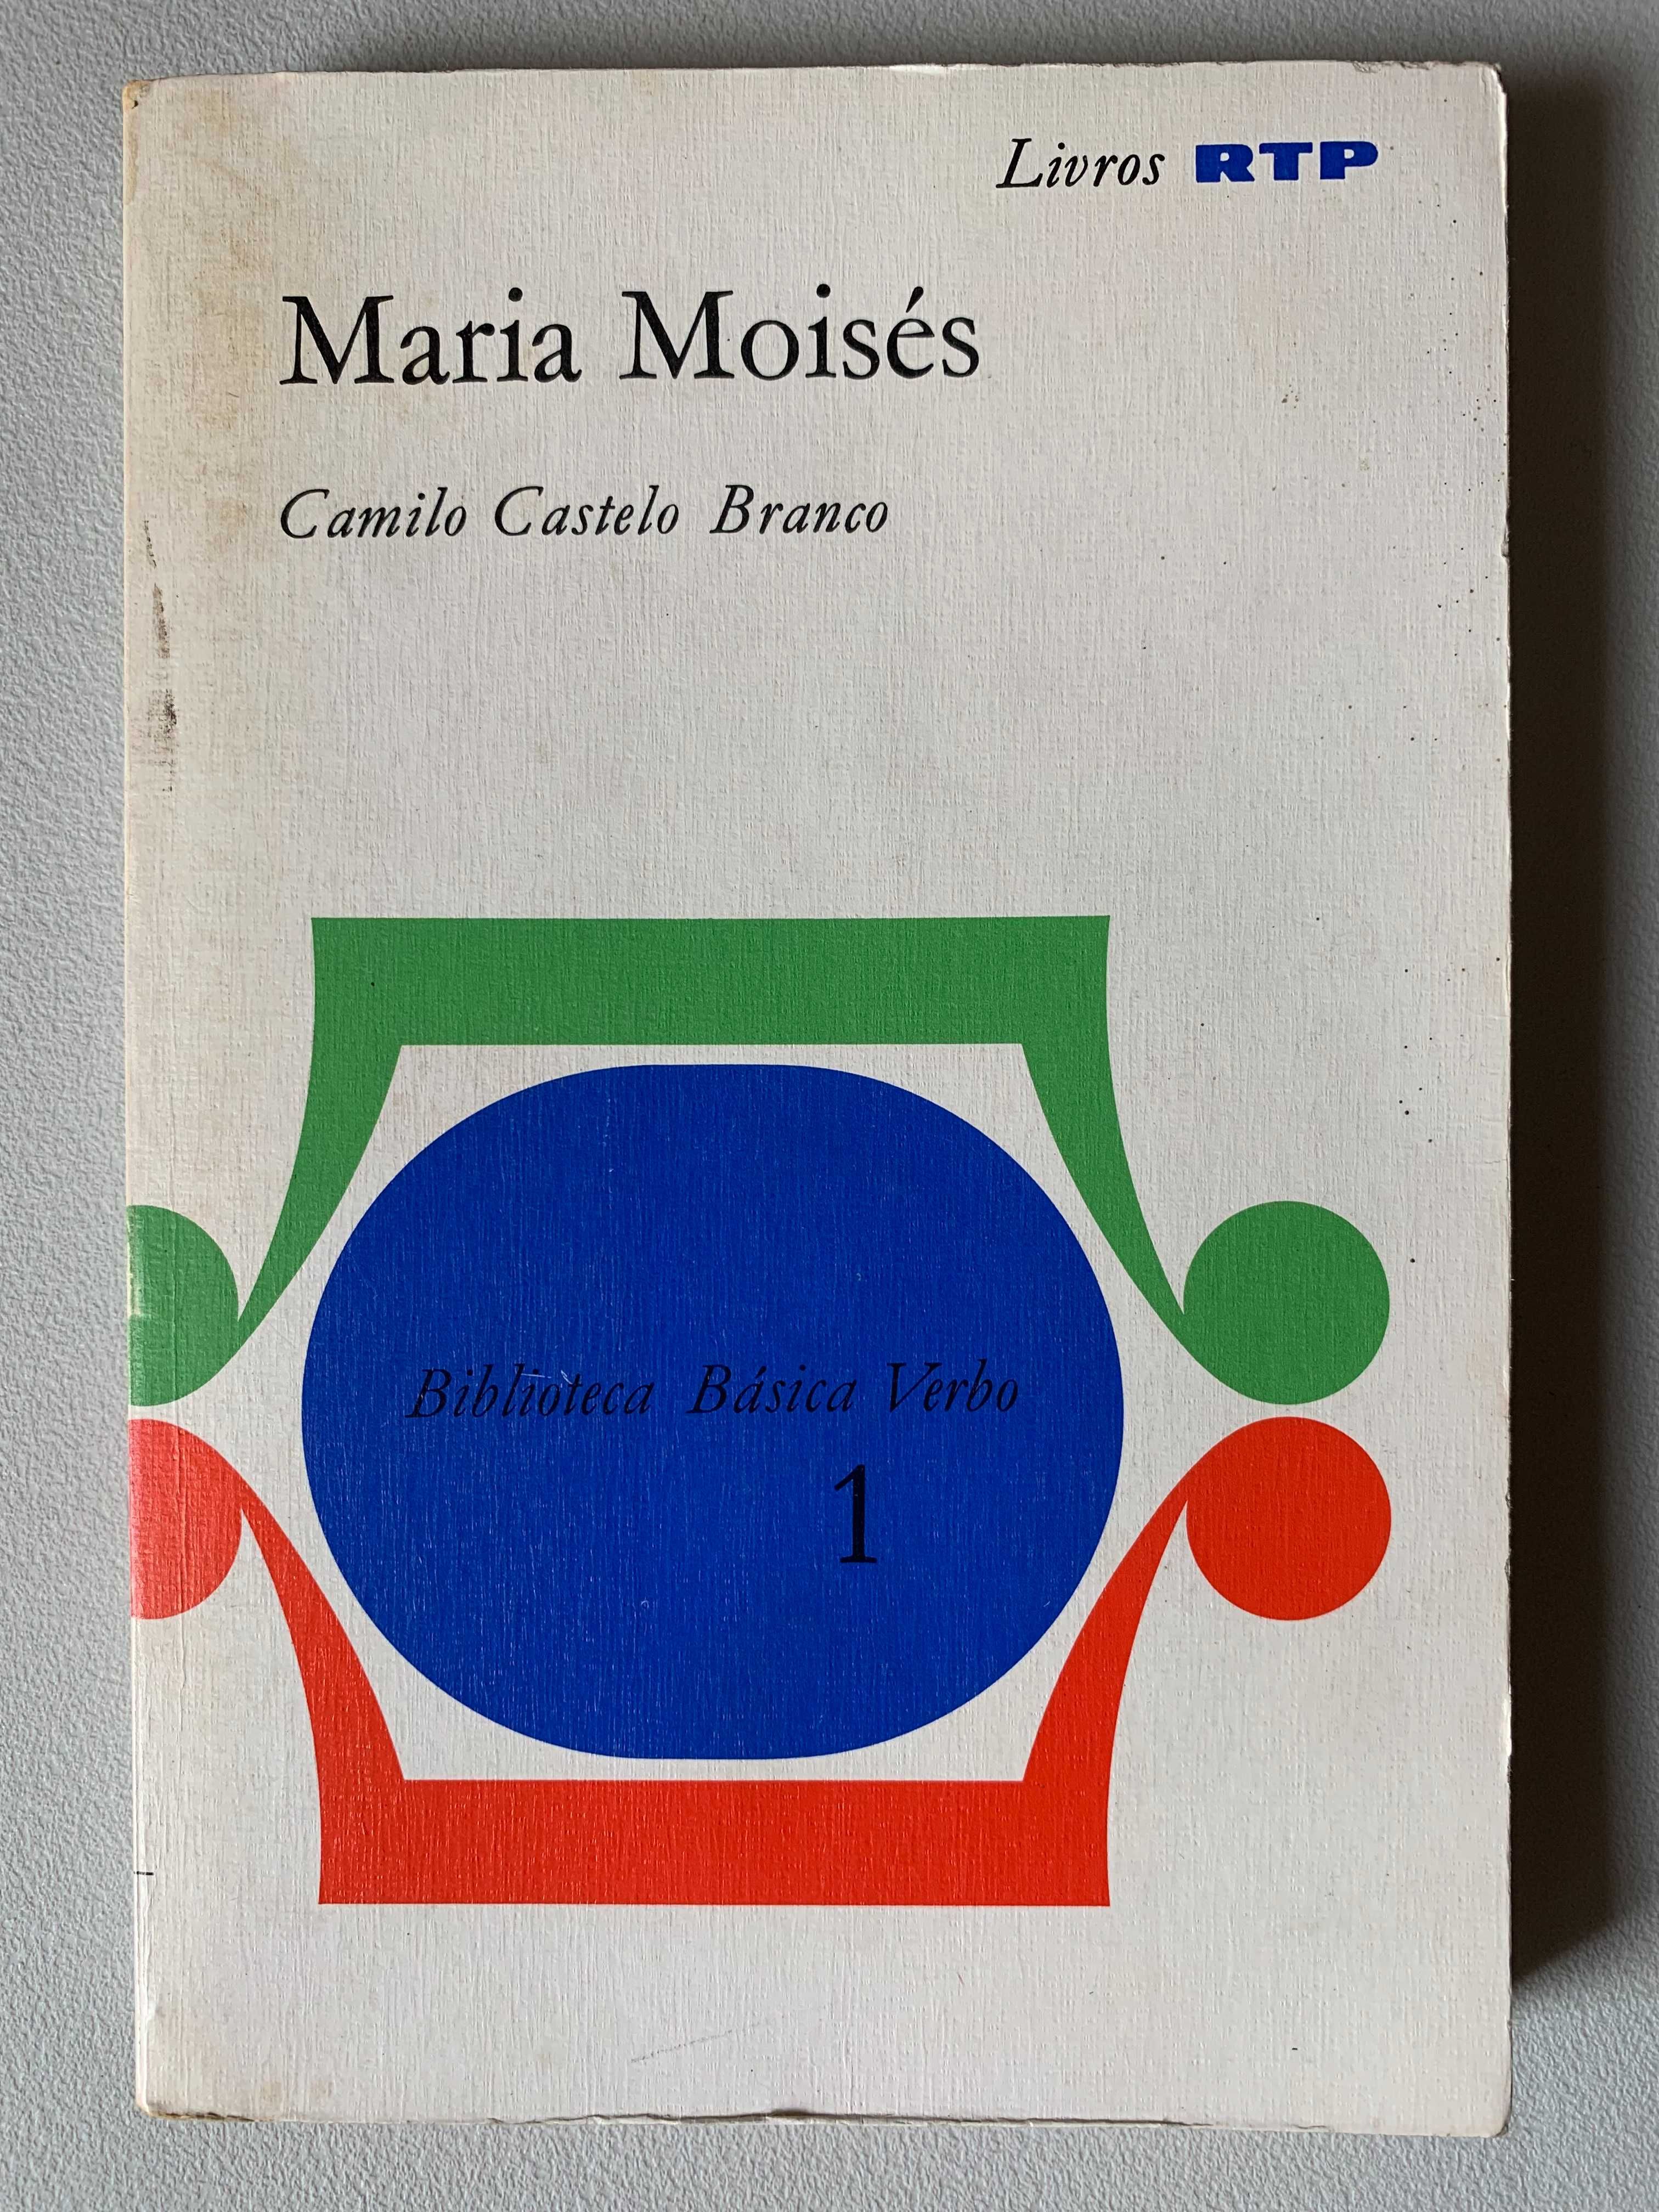 Maria Moisés, de Camilo Castelo Branco